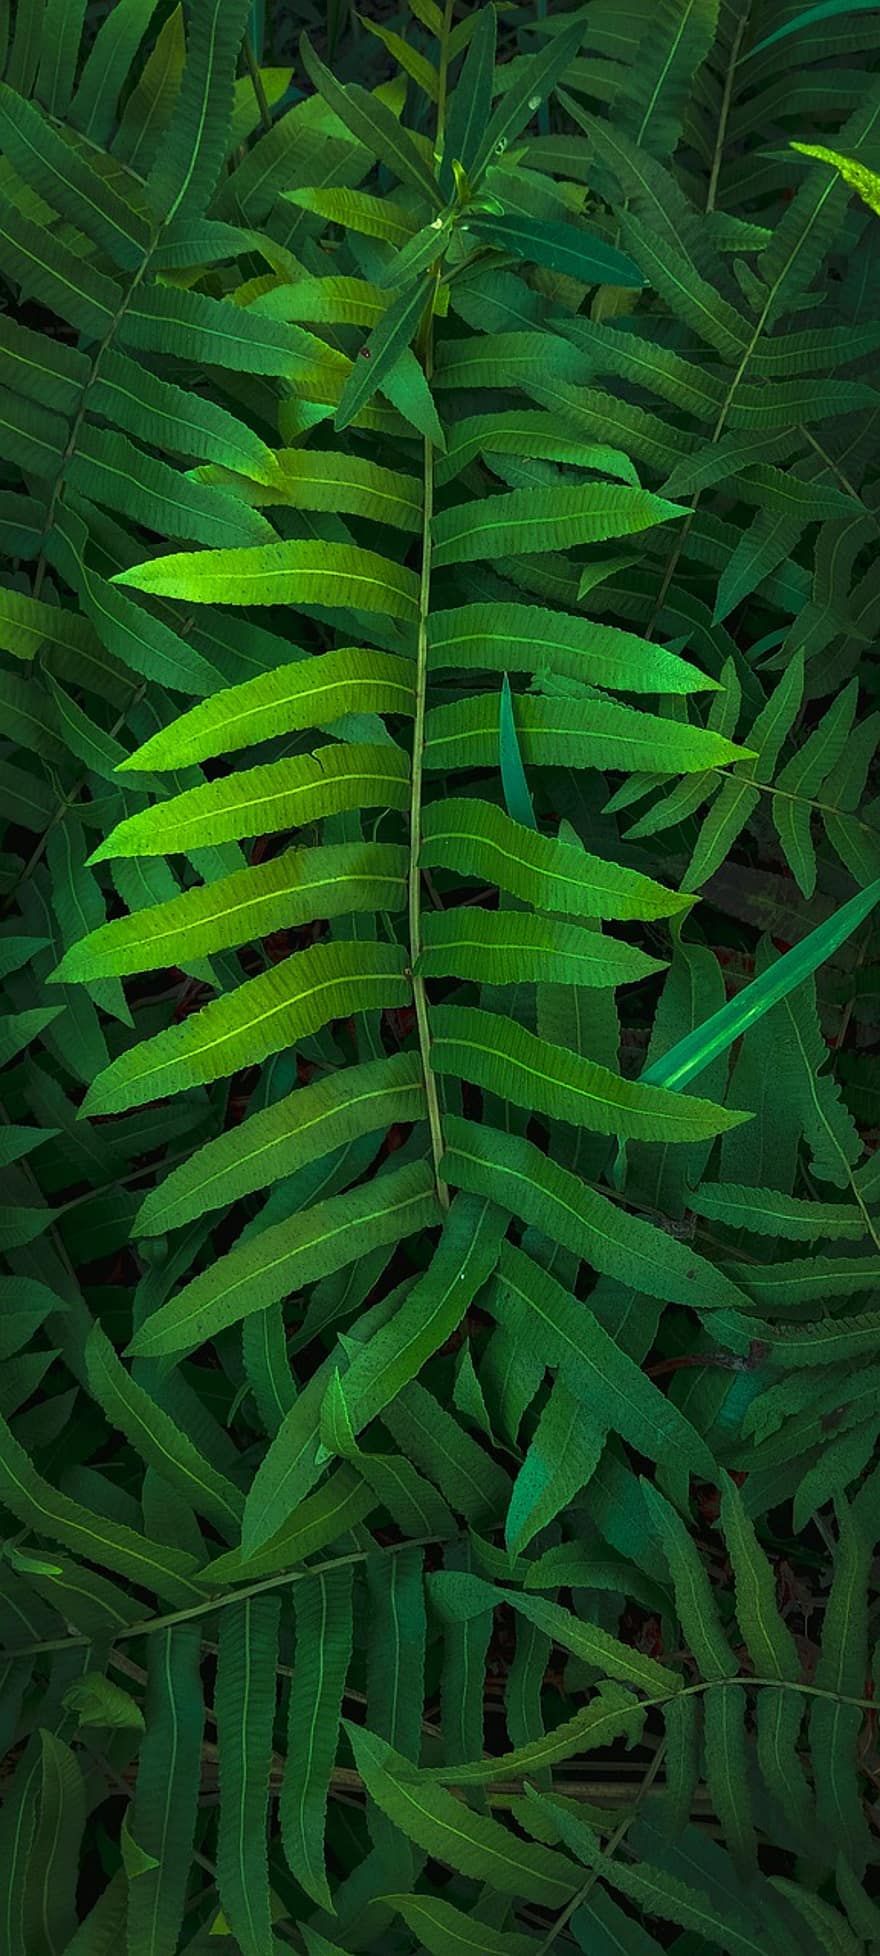 rostlina, listy, zelená, Příroda, zeleň, list, zelená barva, pozadí, les, vzor, detail